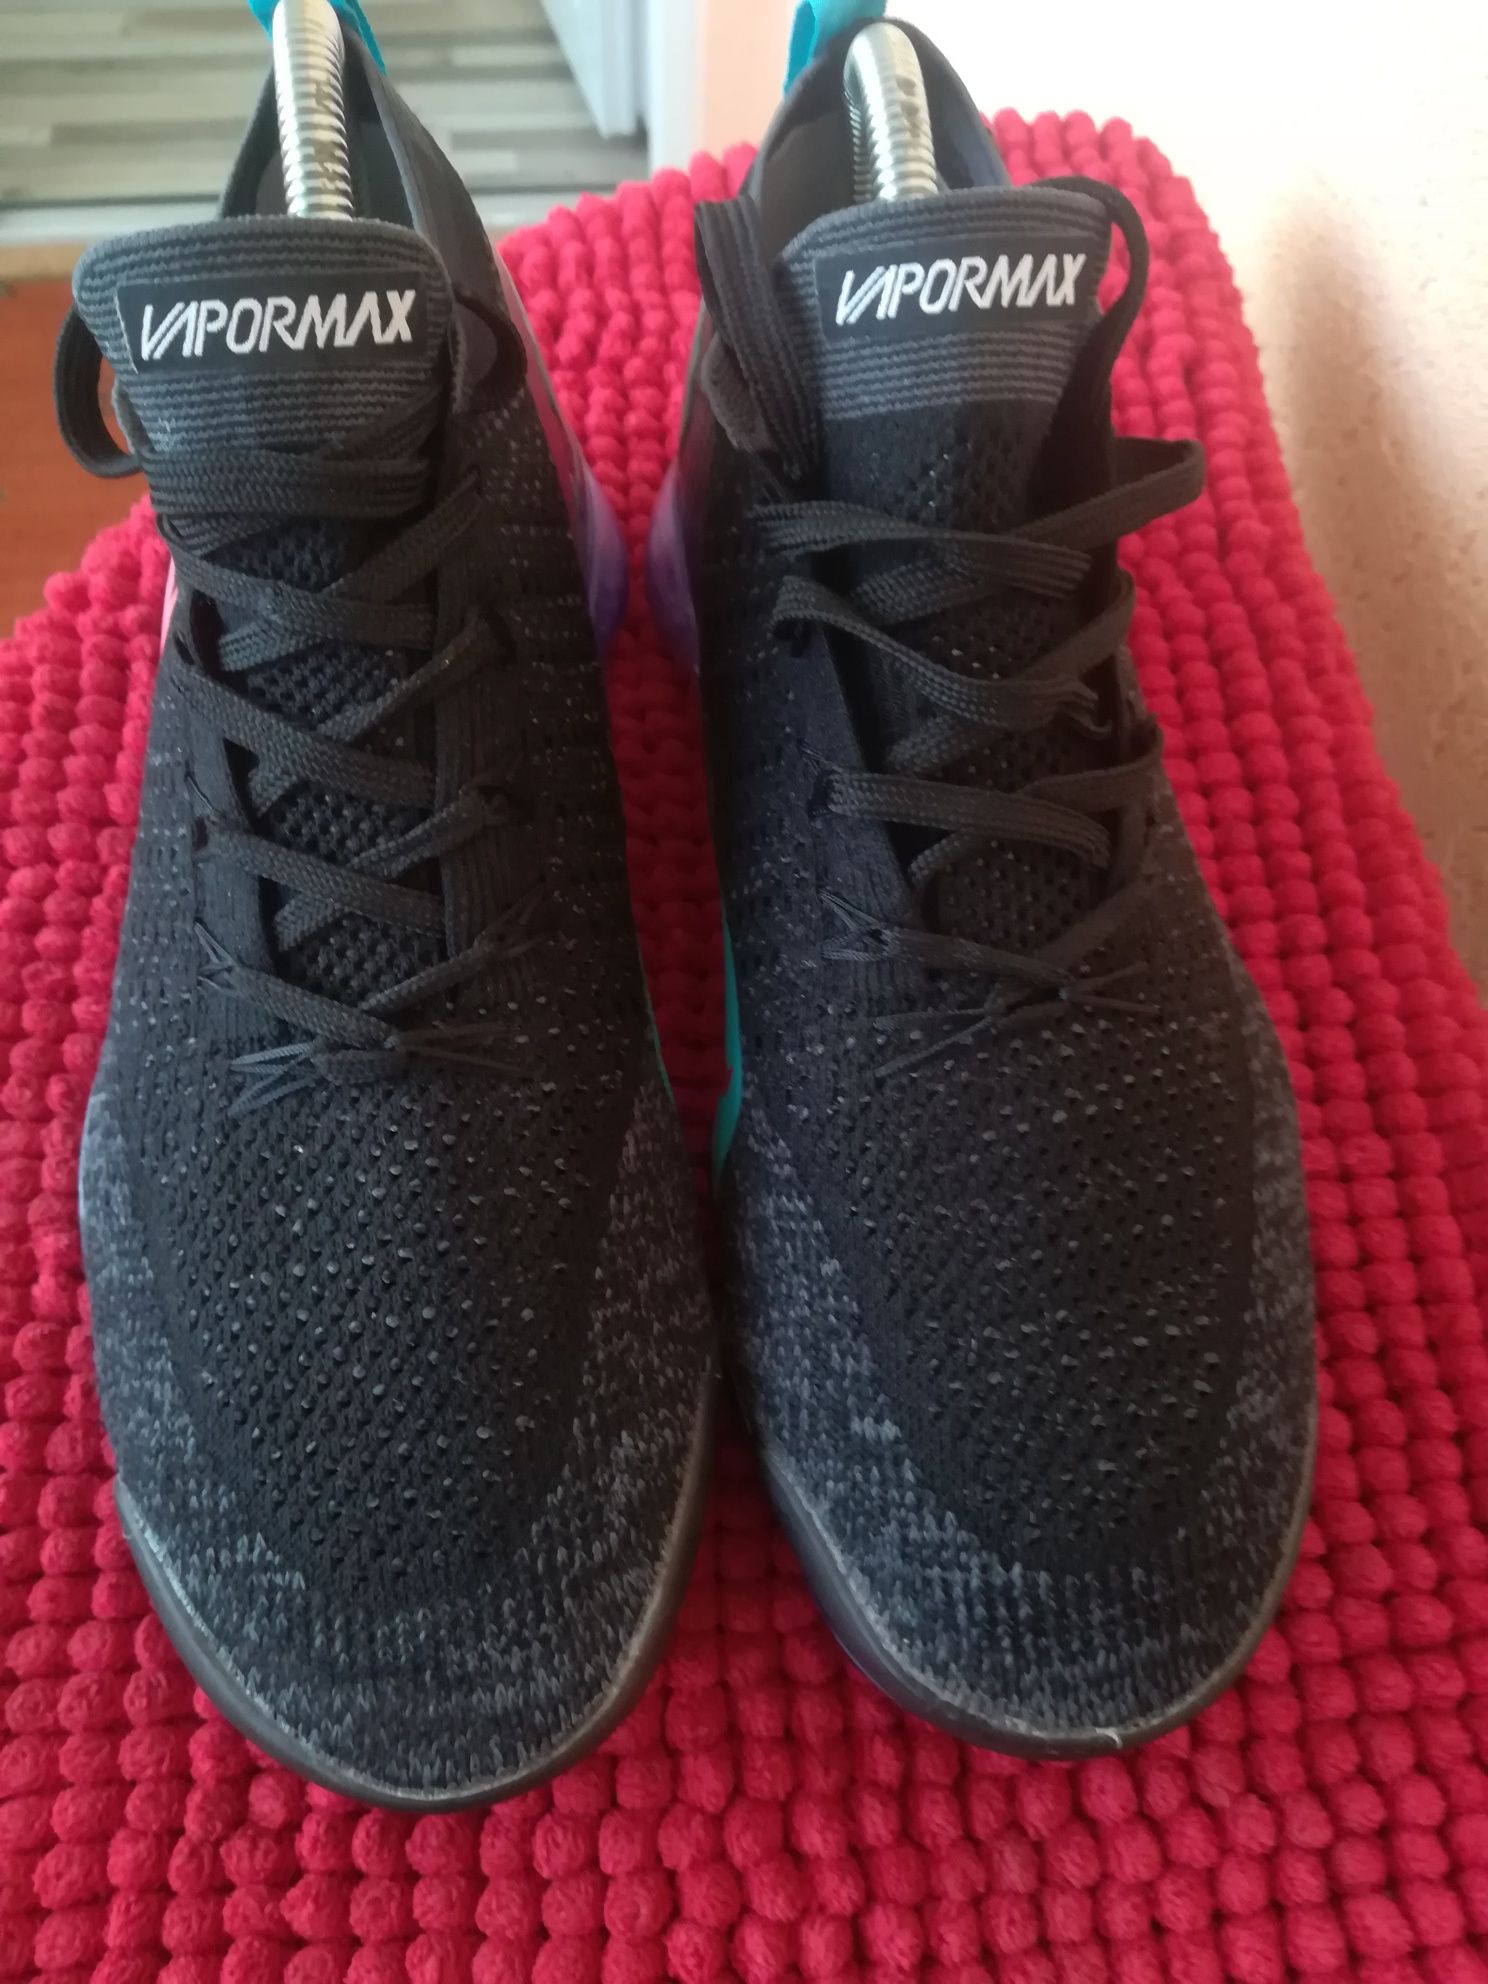 Adidași Nike Vapormax nr 41 bărbați